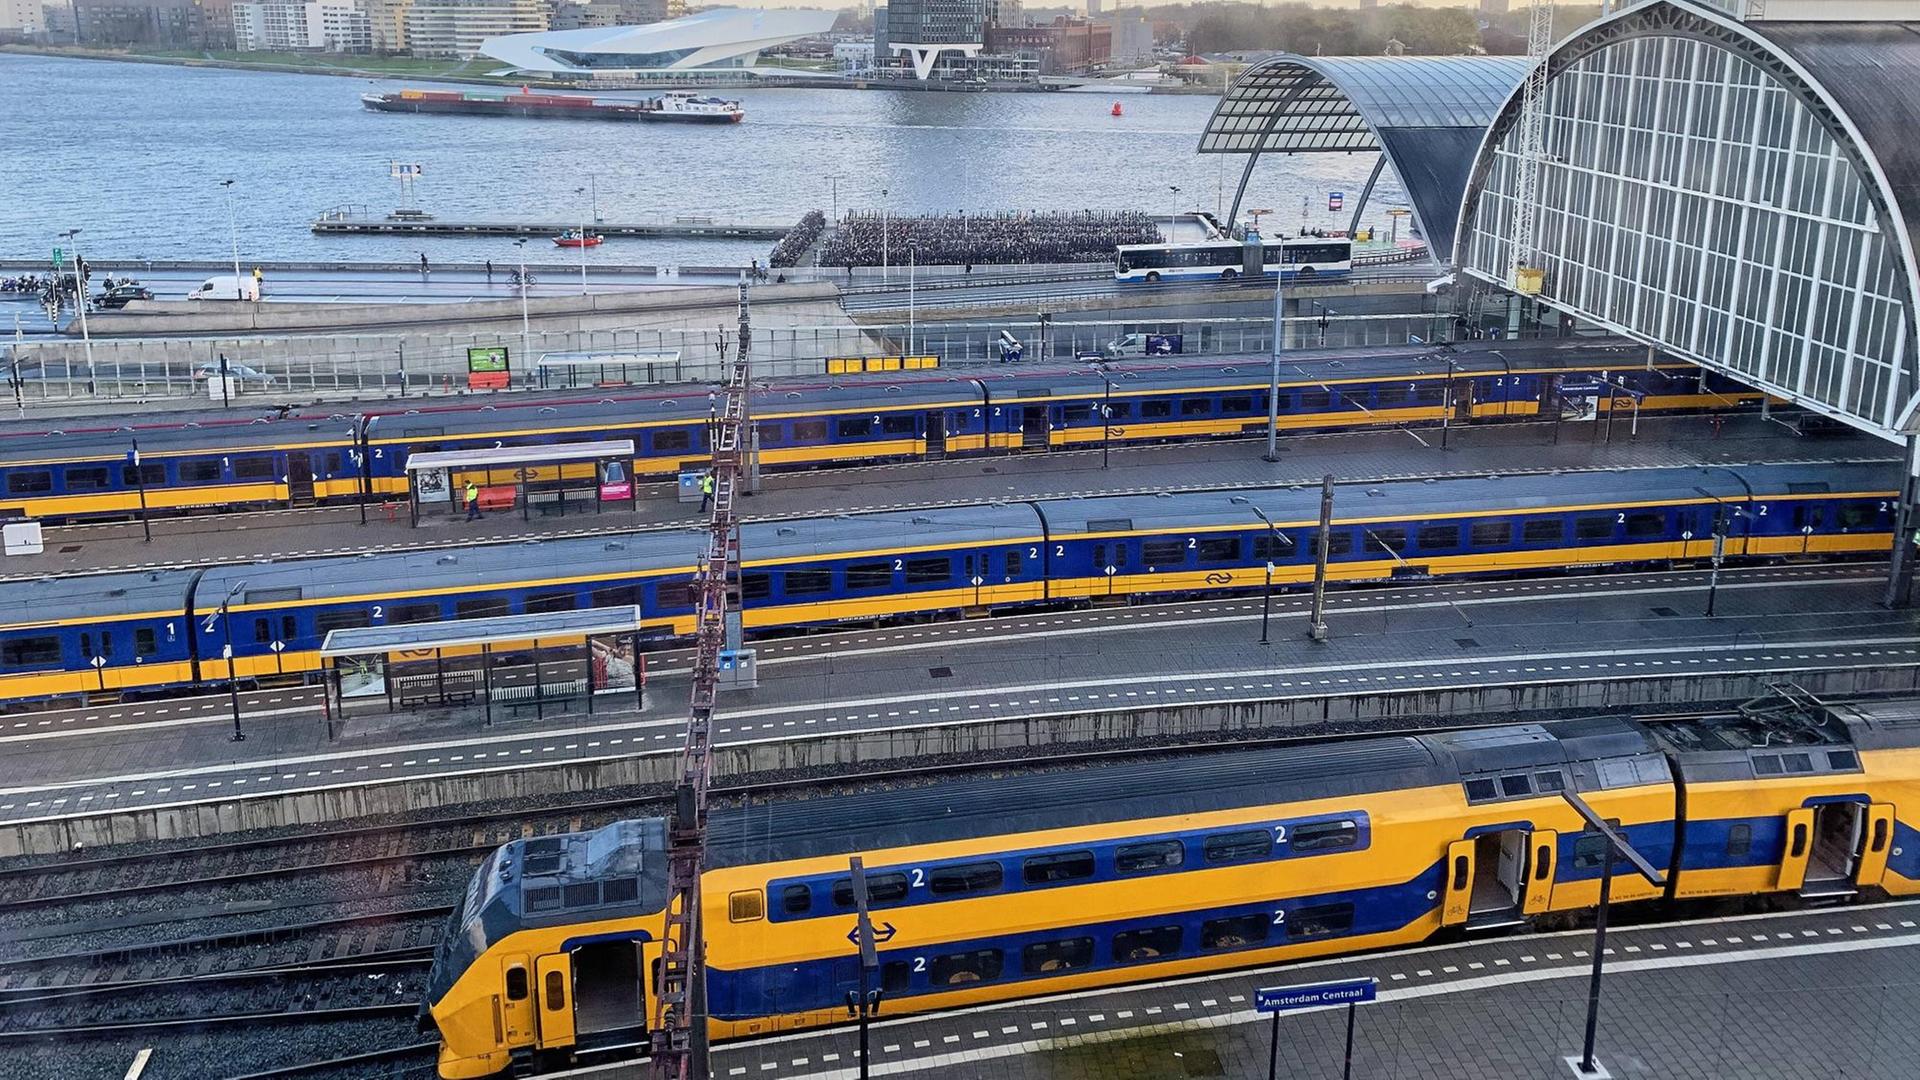 Zu sehen sind Doppelstockzüge der Niederländischen Eisenbahn in einem Bahnhof.